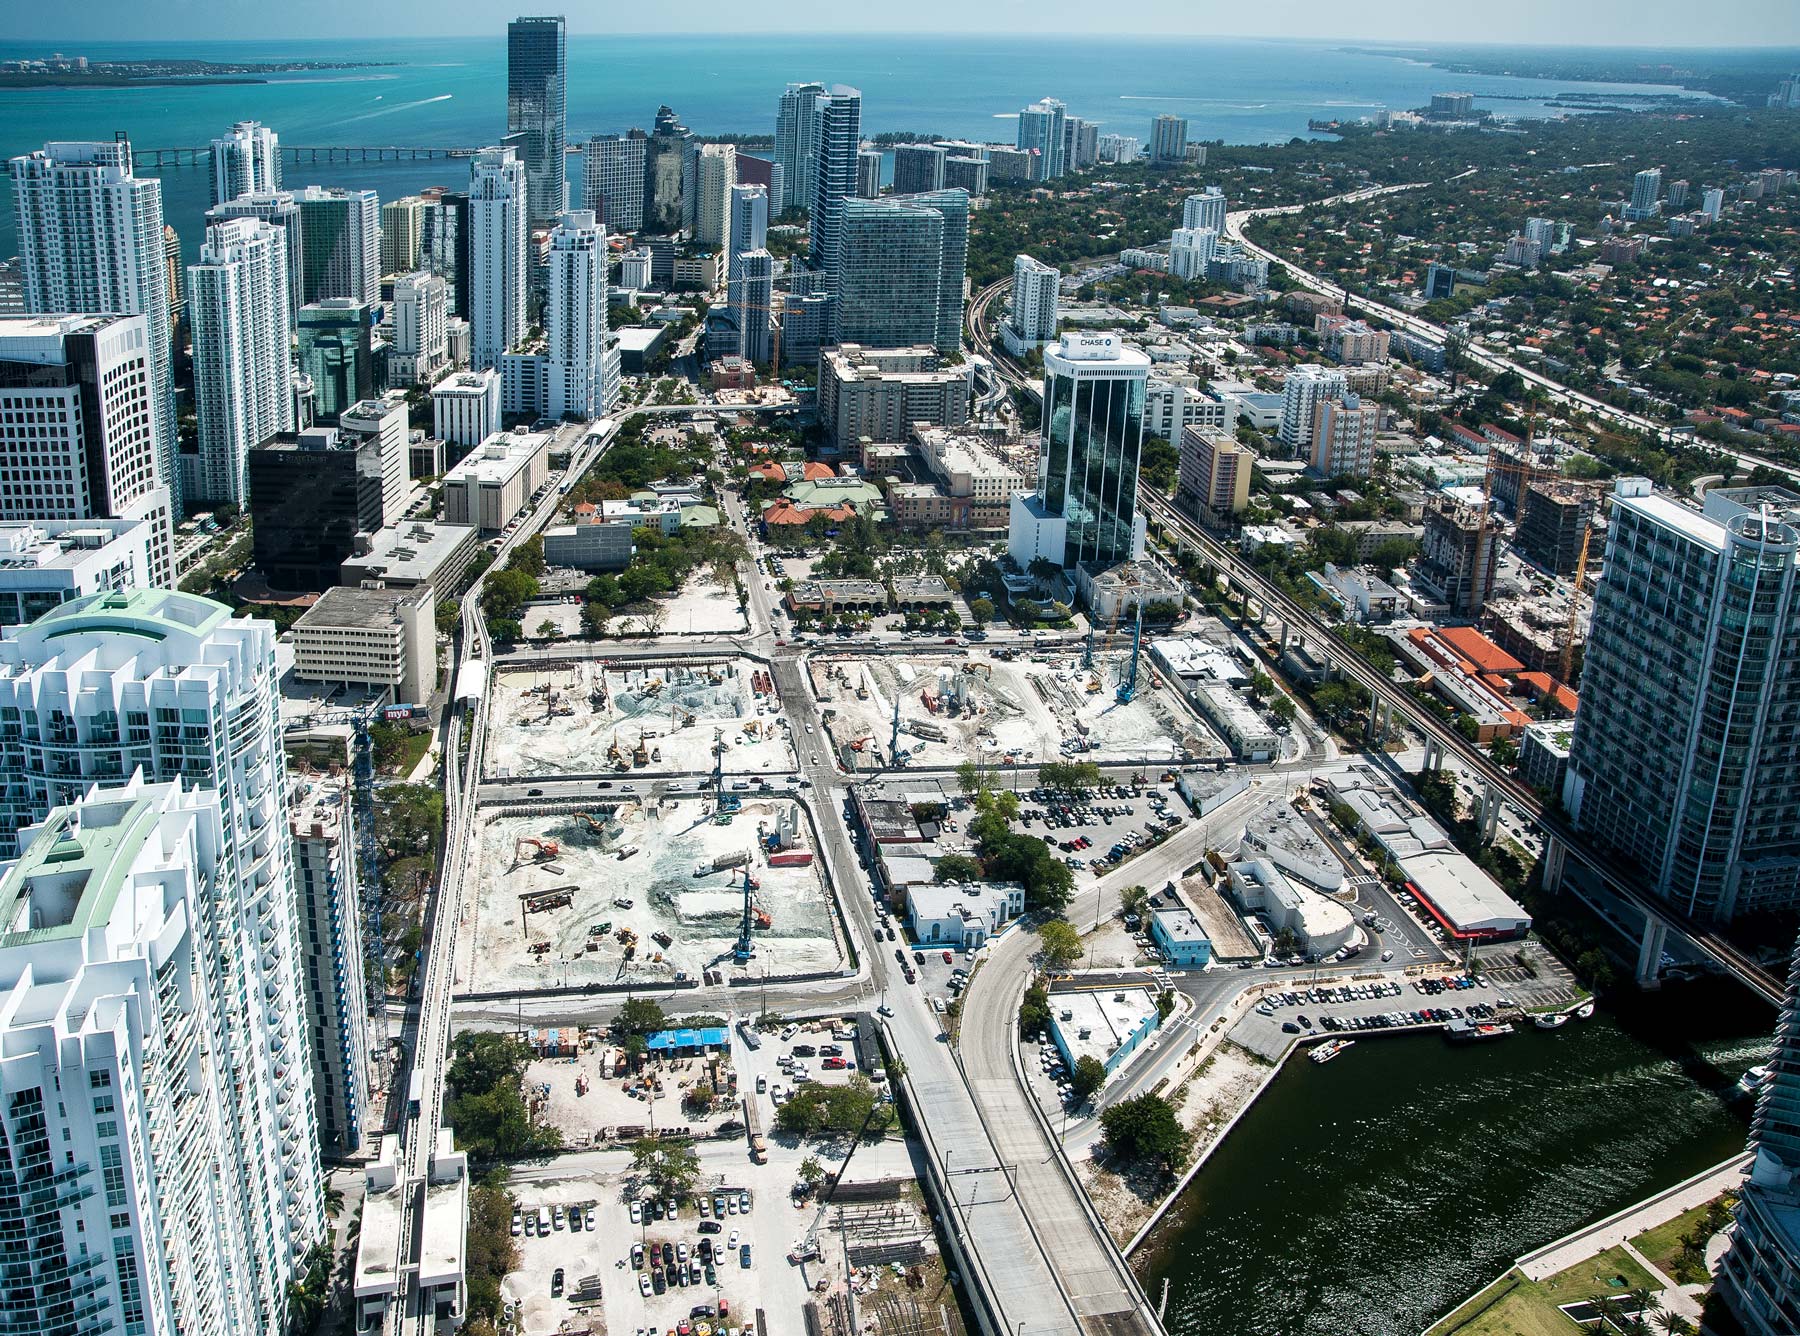 Aerial view of Brickell City Centre, Miami FL